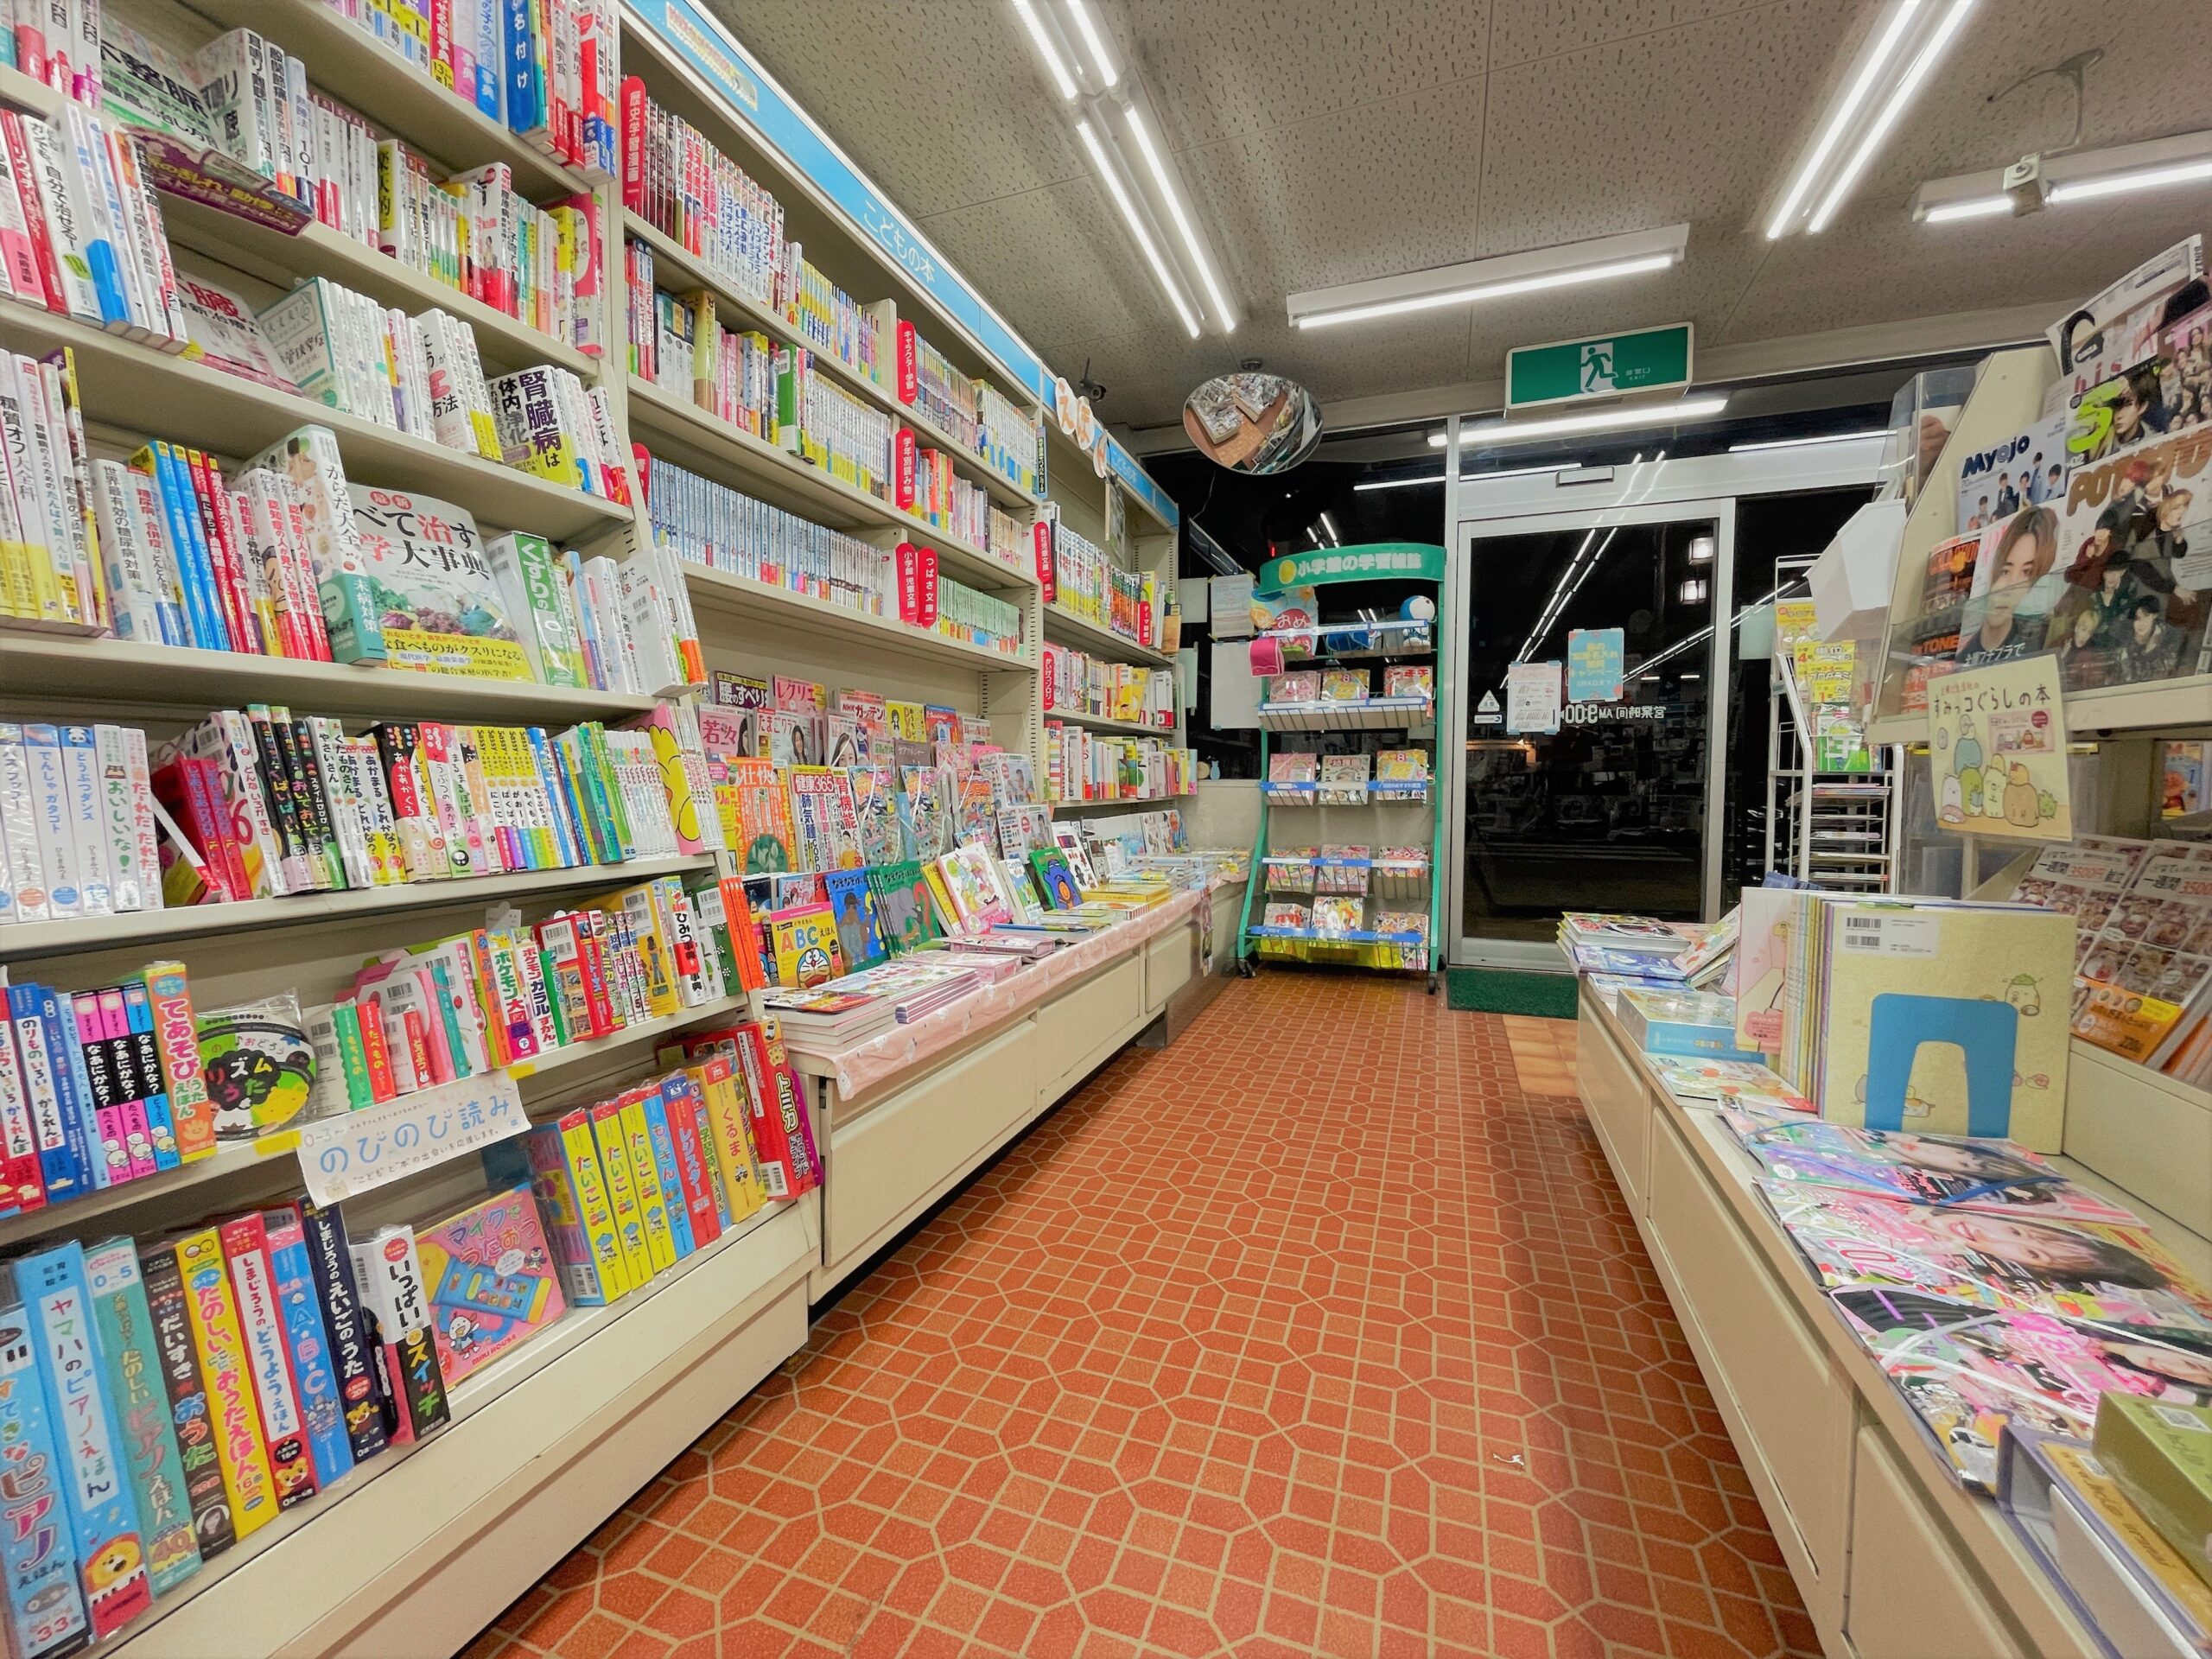 石川県津幡町のスガイ書店